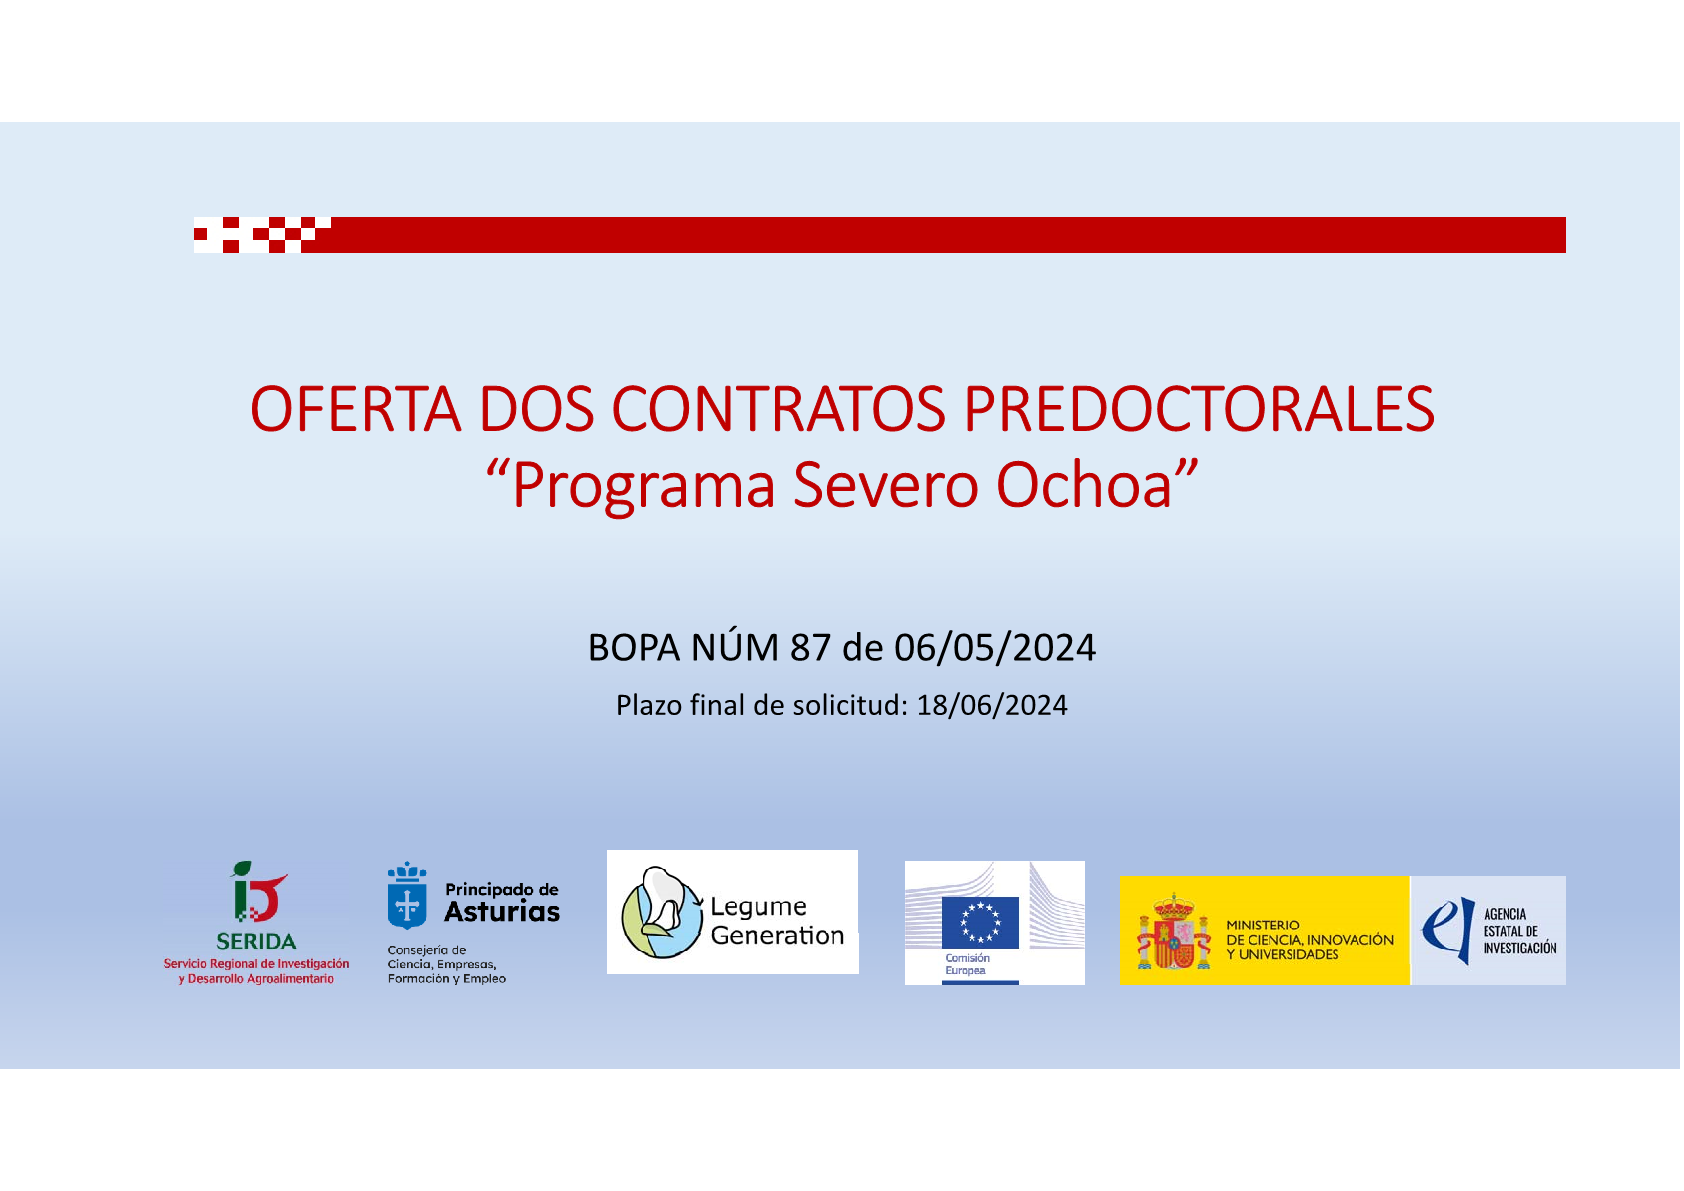 Foto El SERIDA oferta dos contratos predoctorales “Programa Severo Ochoa”. Villaviciosa, 30 de mayo de 2024